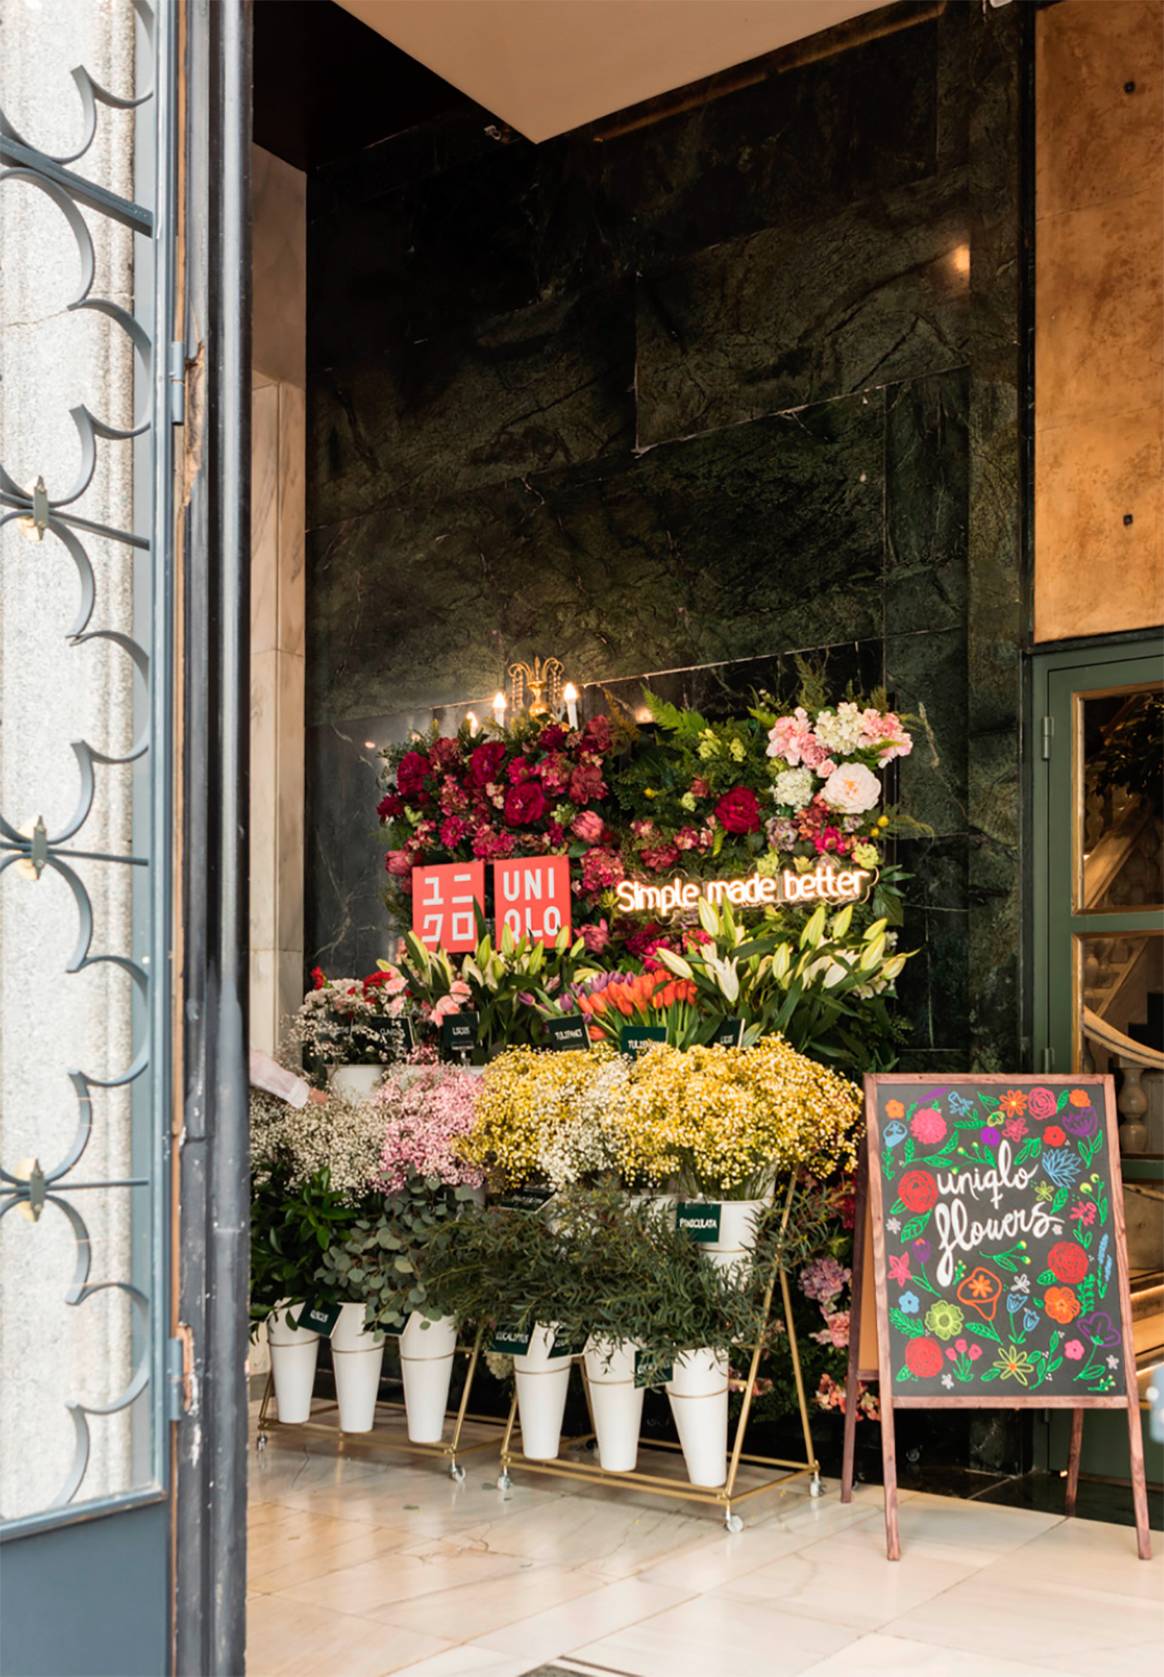 Photo Credits: Vista del espacio “Uniqlo Flower” de la tienda de Uniqlo en la Gran Vía de Madrid. Fotografía de cortesía.